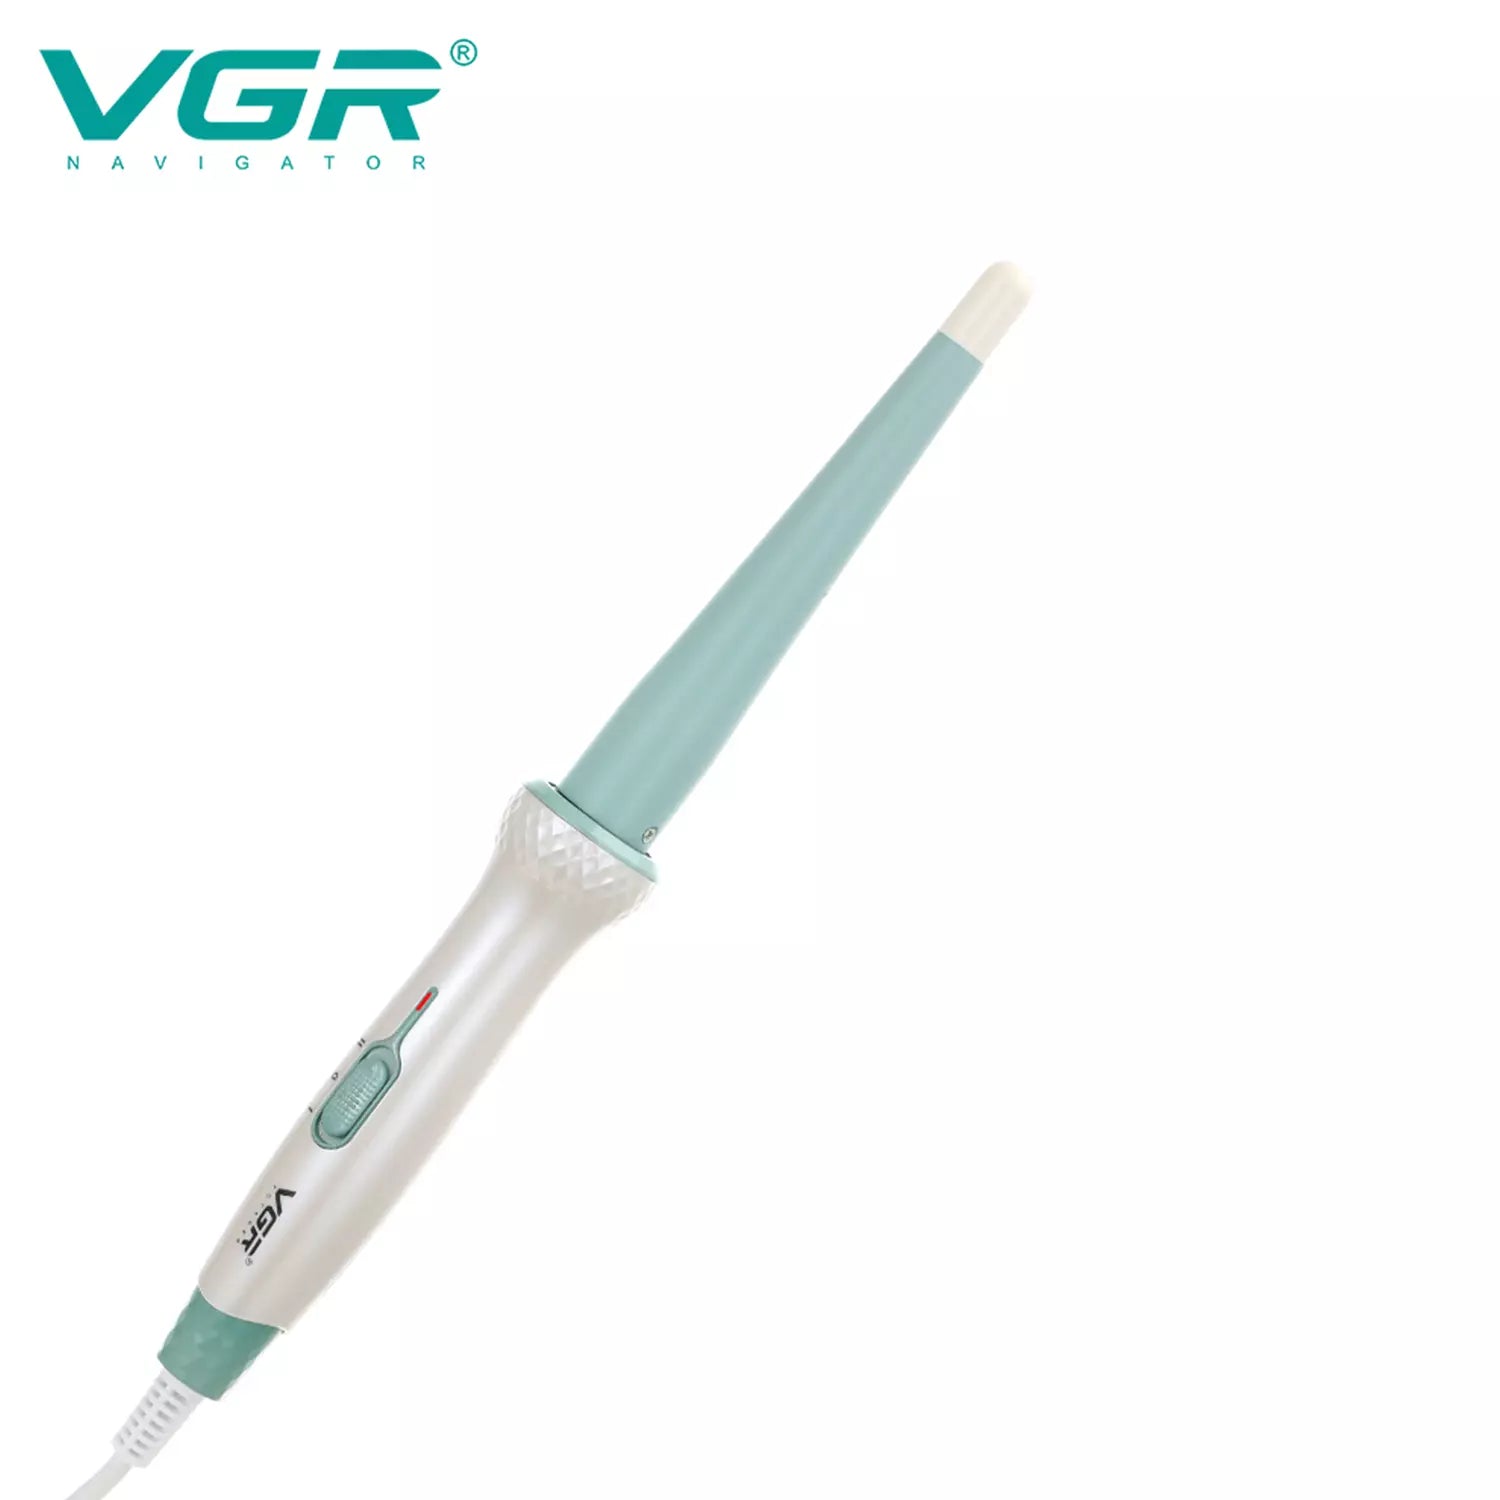 VGR, VGRindia, VGRofficial, VGR V-596